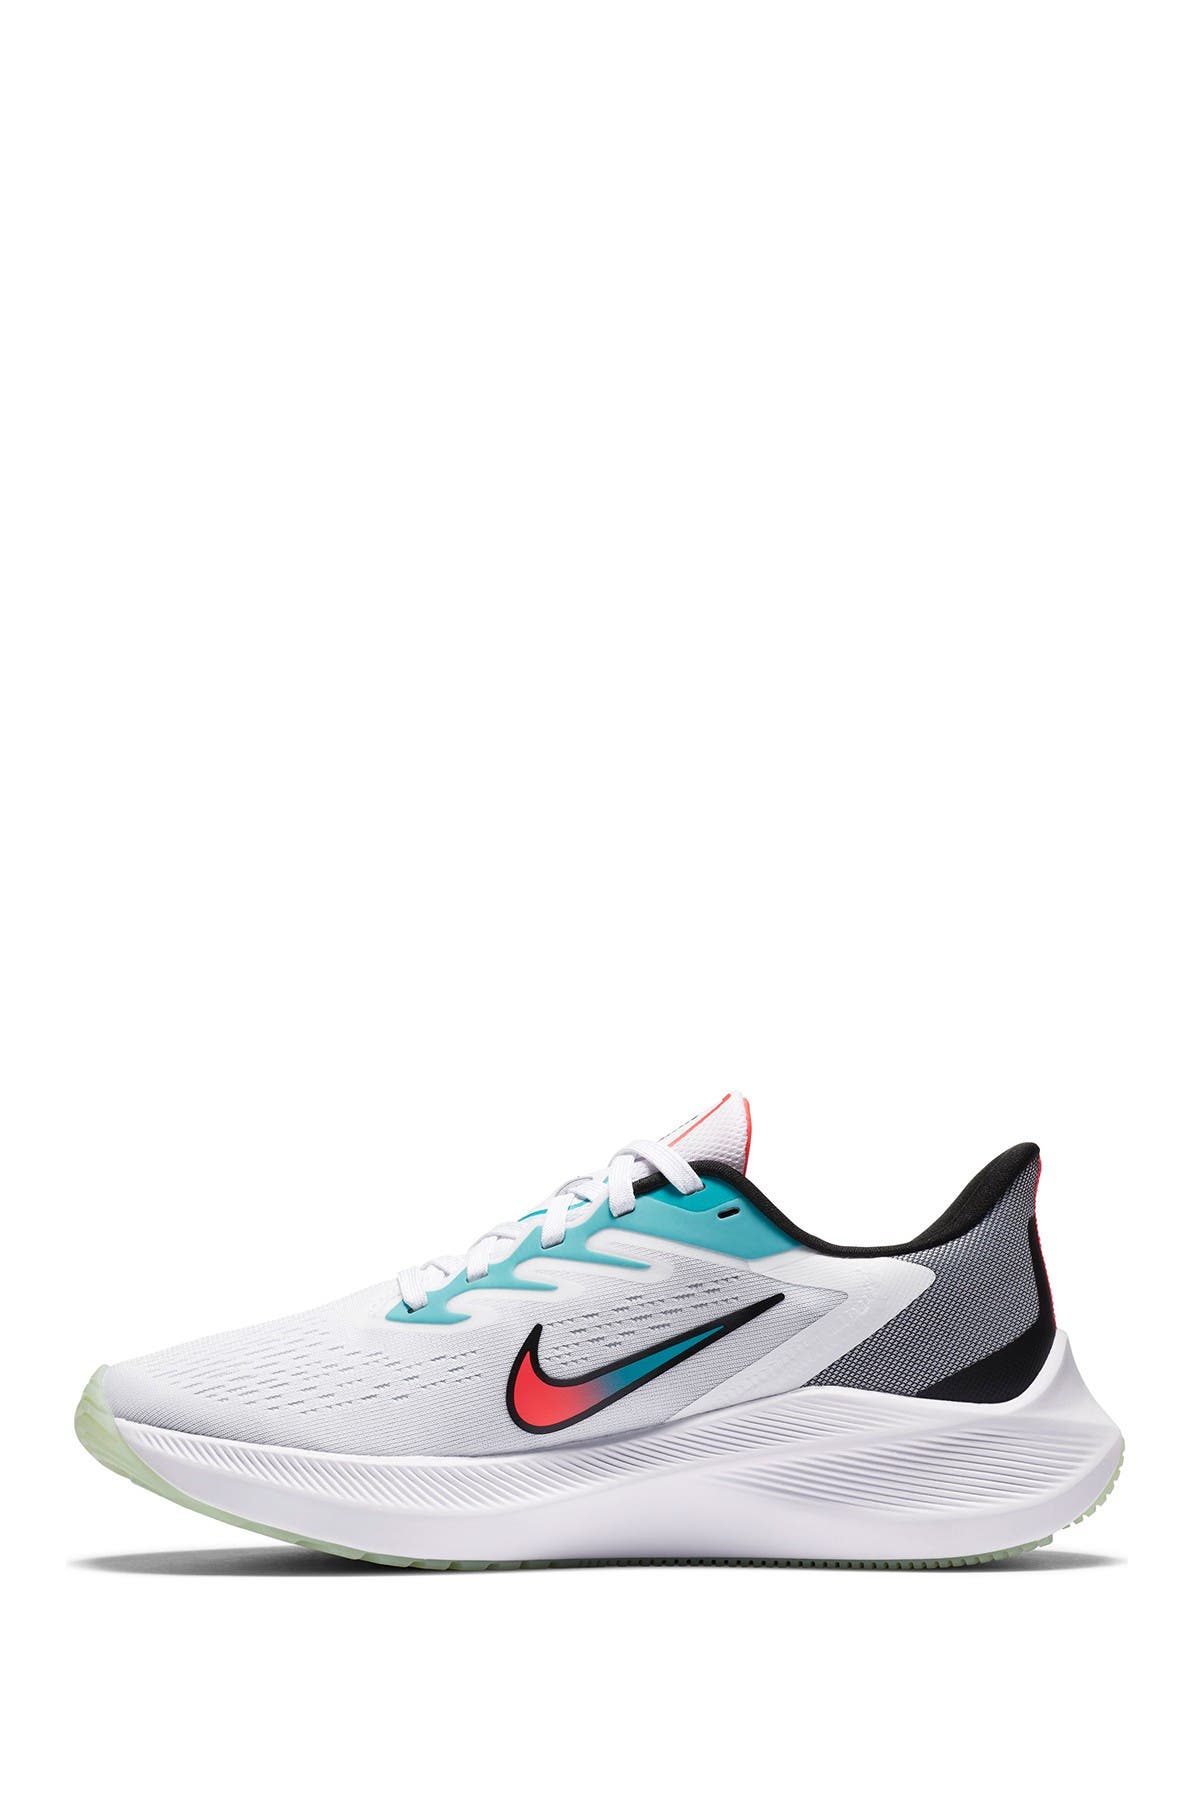 Nike | Air Zoom Winflo Sneaker | Nordstrom Rack